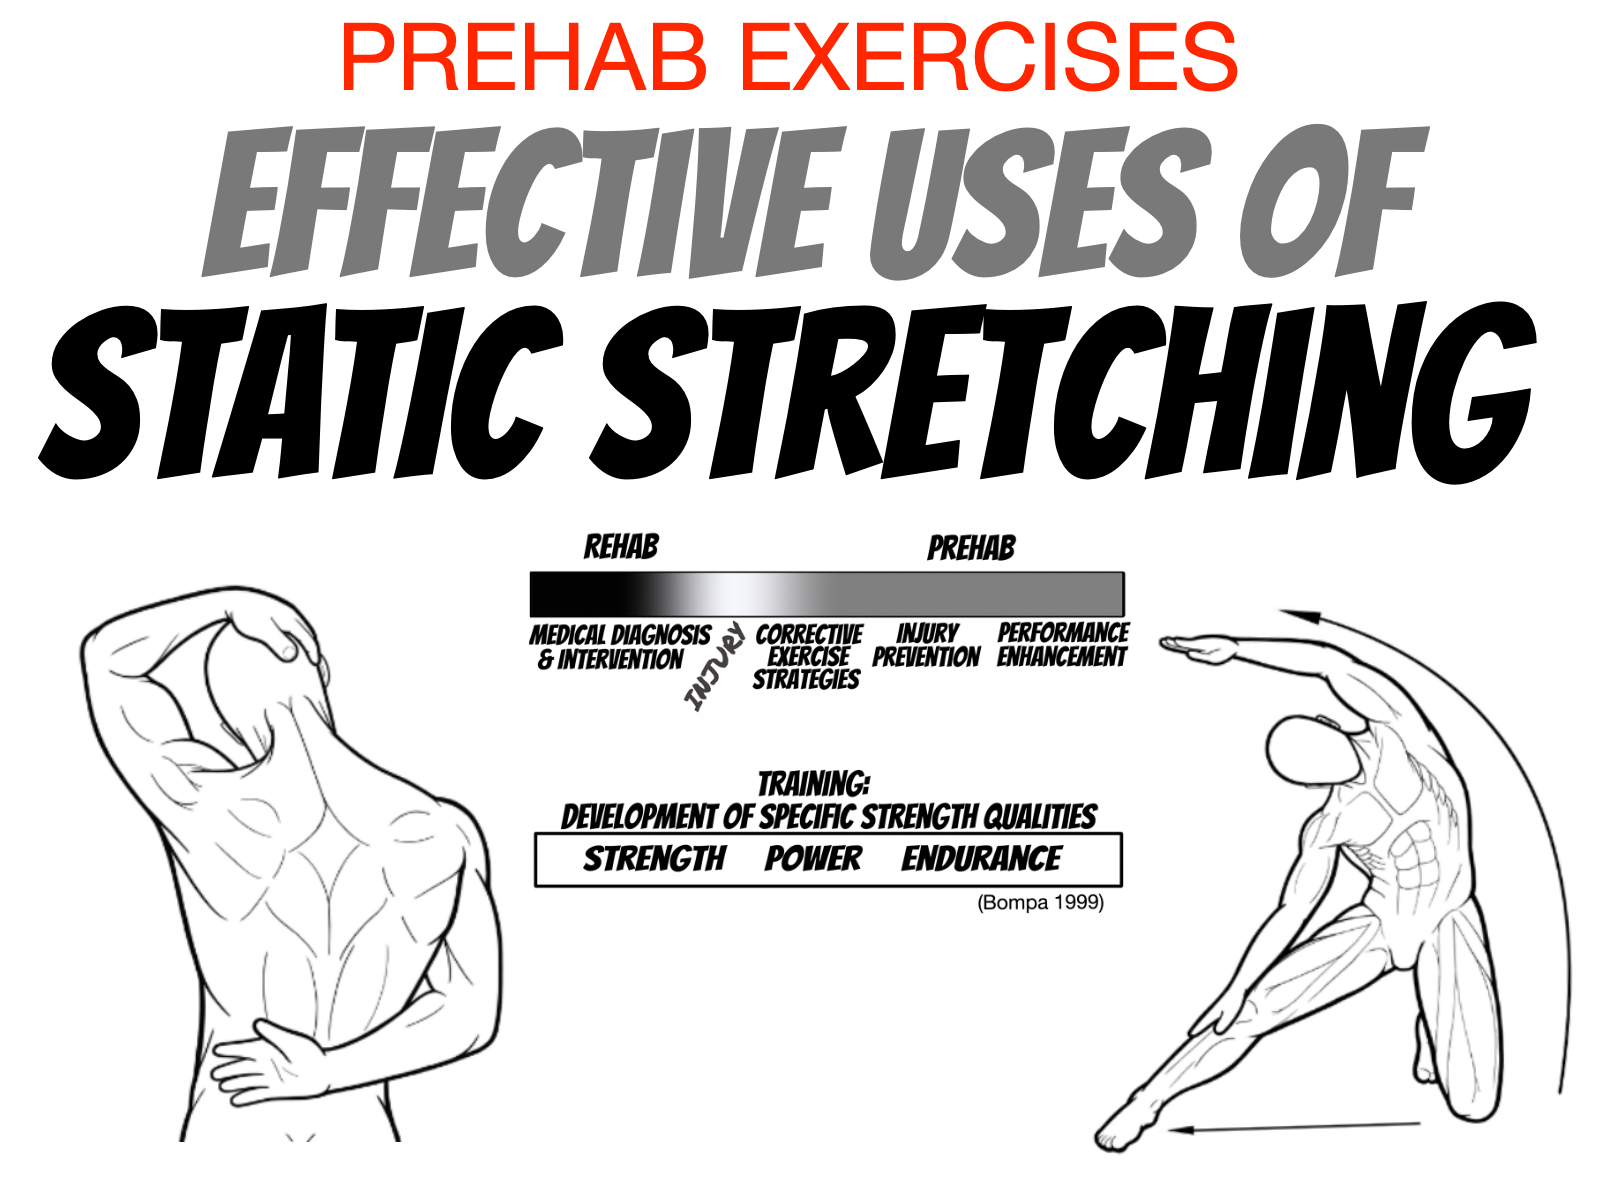 How To Master The Hip Flexor Stretch - The Prehab Guys